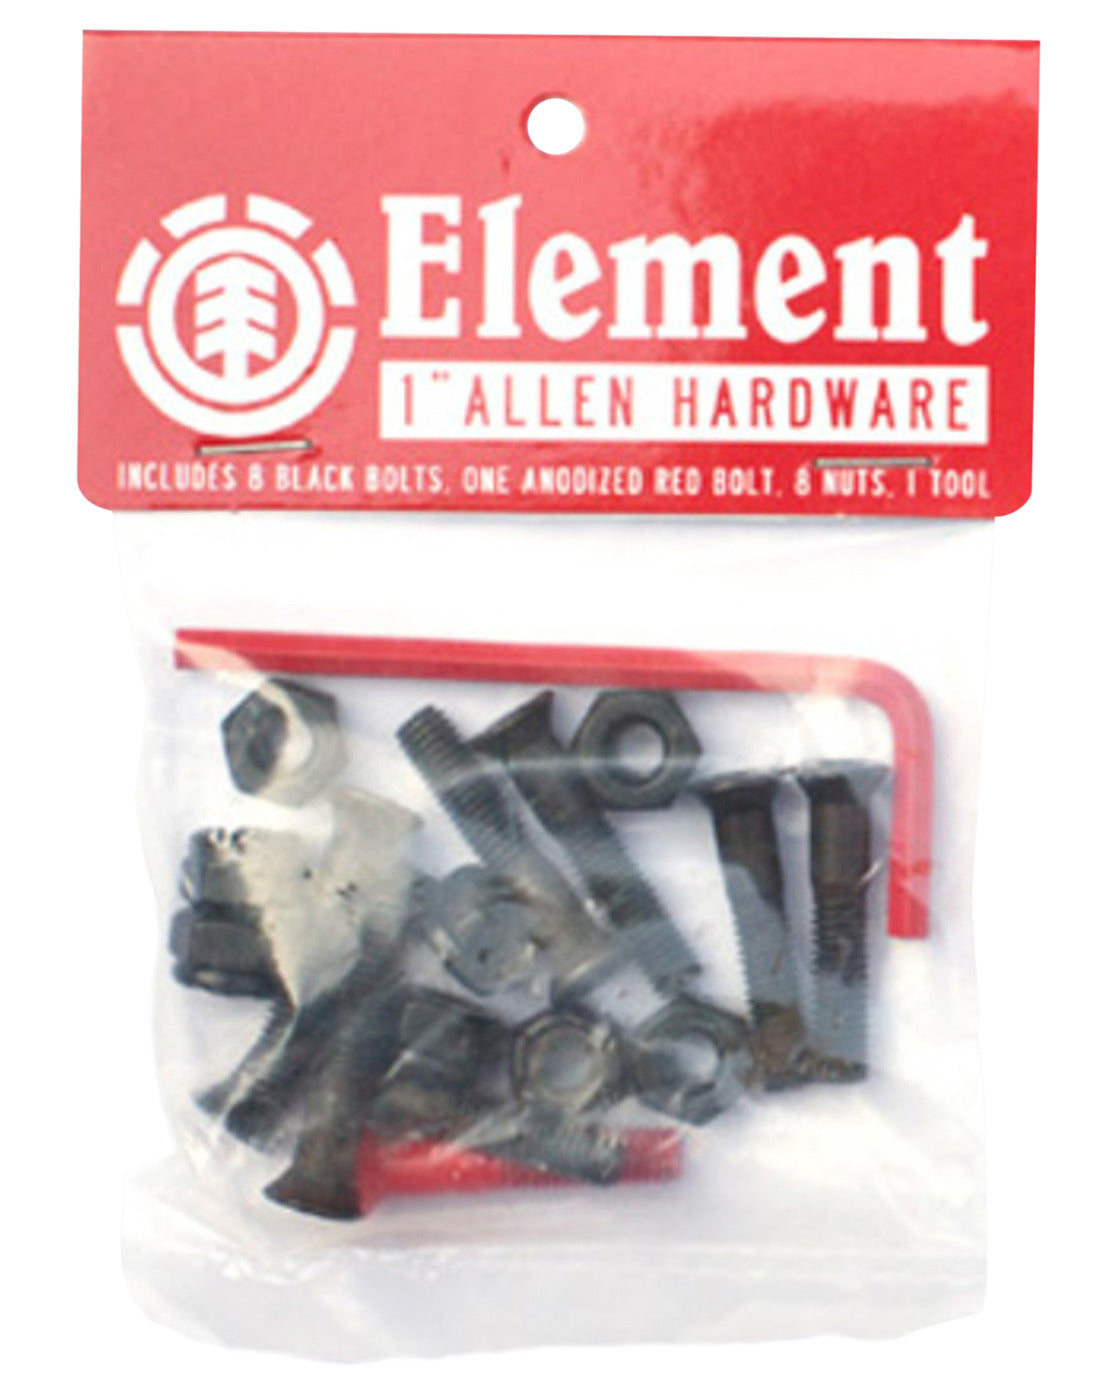 Element 1" Allen Hardware Bots & Nuts Q4AHA7ELF9